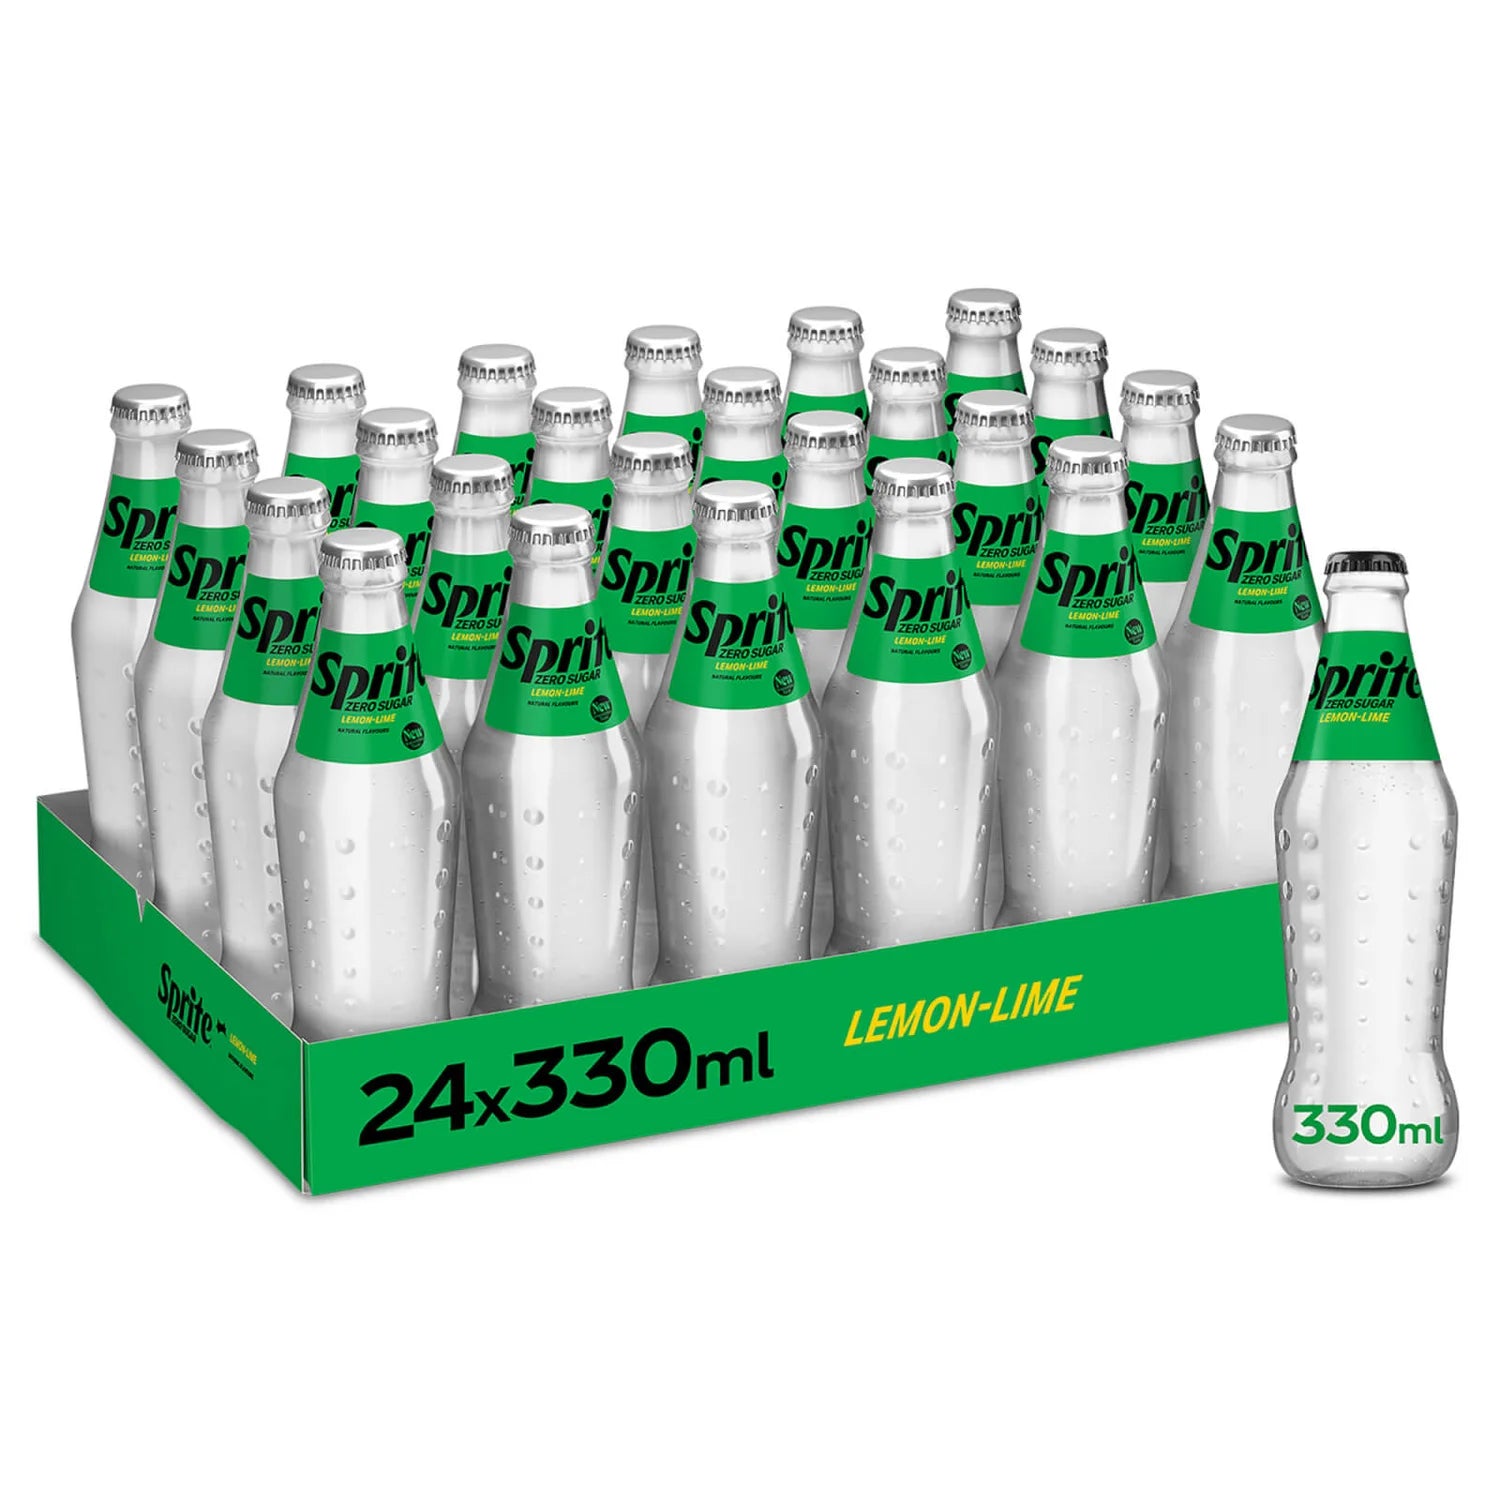 Sprite Zero Glass Bottles - 330ml - Case of 24